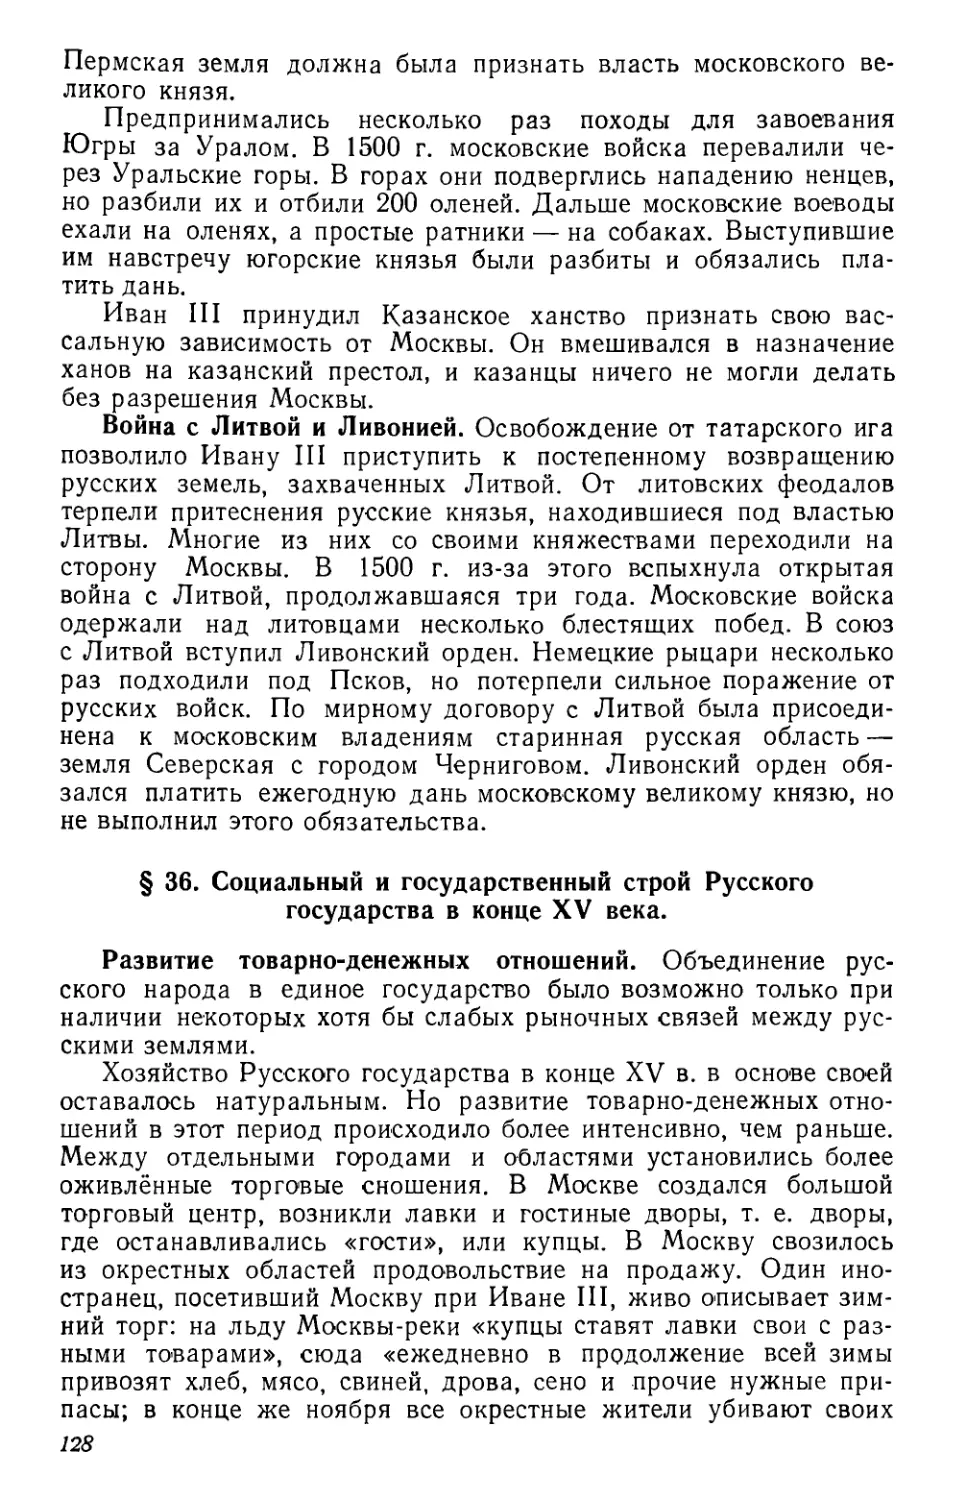 § 36. Социальный и государственный строй Русского государства в конце XV века